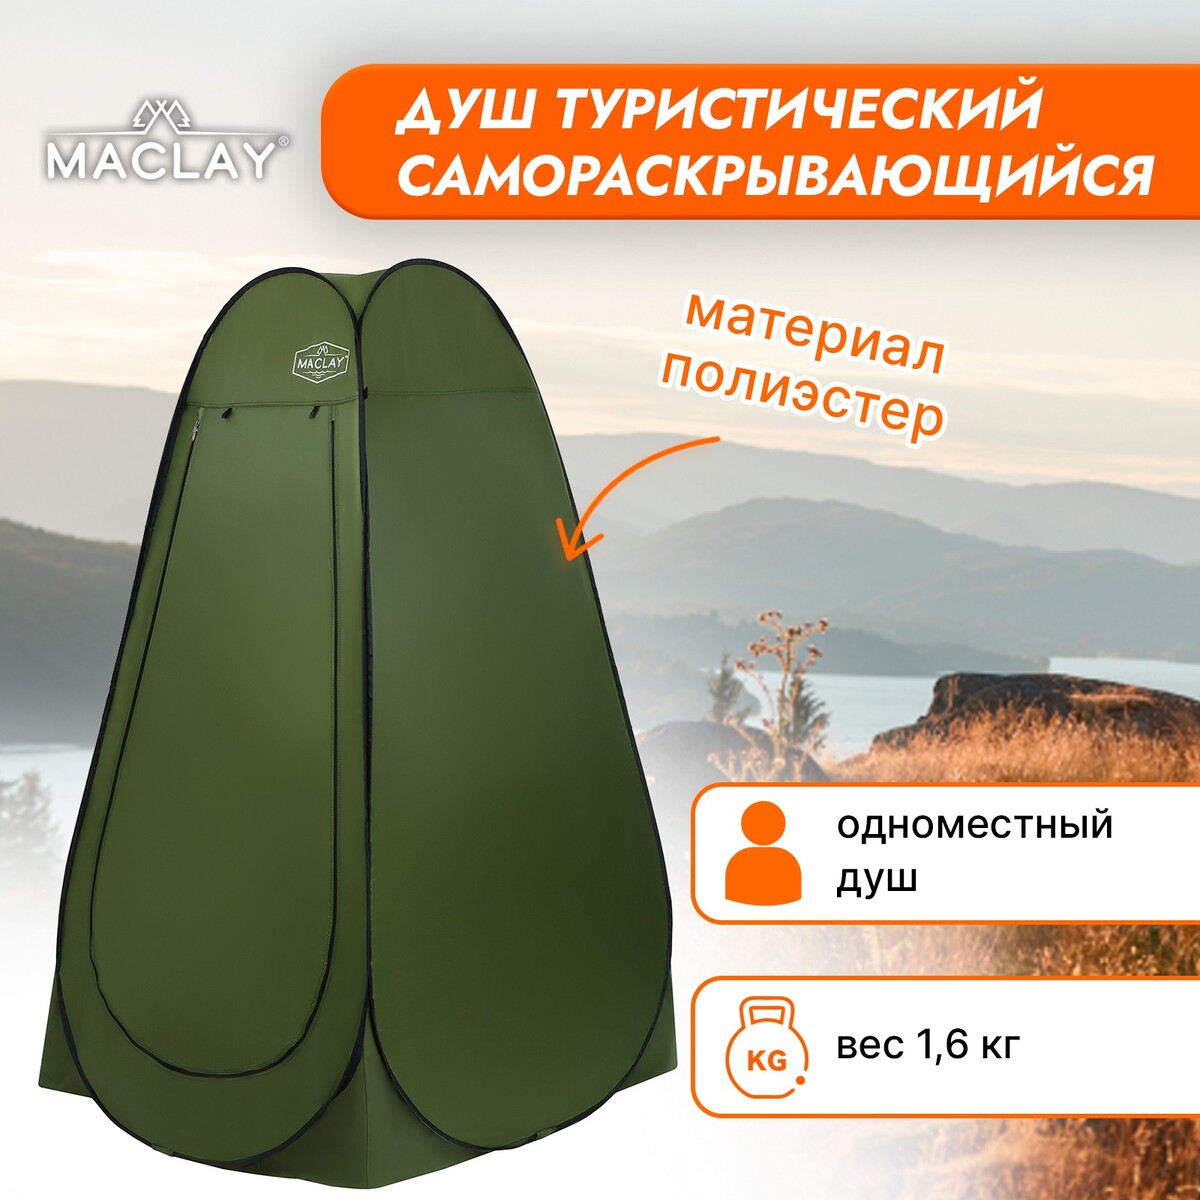 Палатка туристическая maclay, самораскрывающаяся, для душа, 120х120х195 см, цвет зеленый палатка туристическая atemi ladoga 1b rip stop